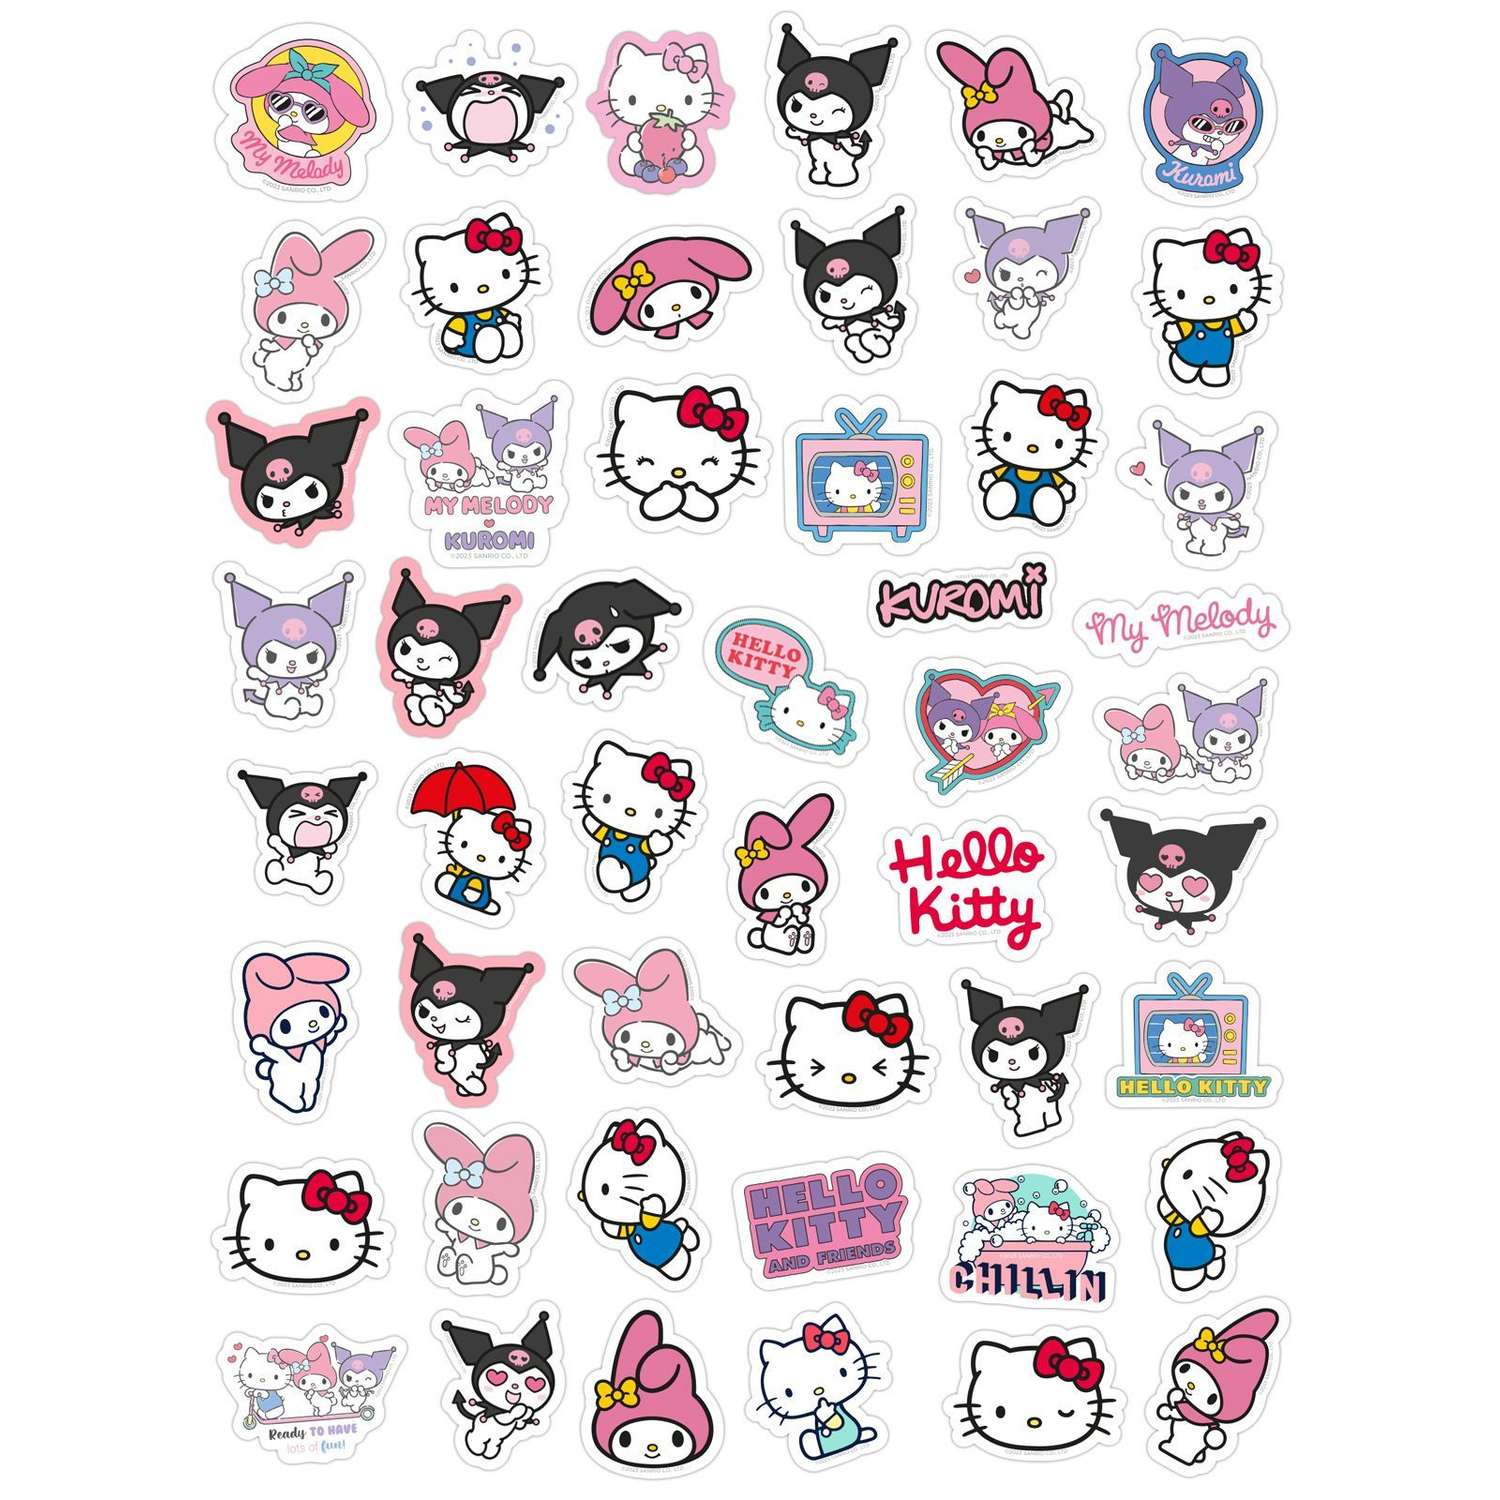 Наклейки виниловые PrioritY детские Hello Kitty Куроми 50 штук - фото 2